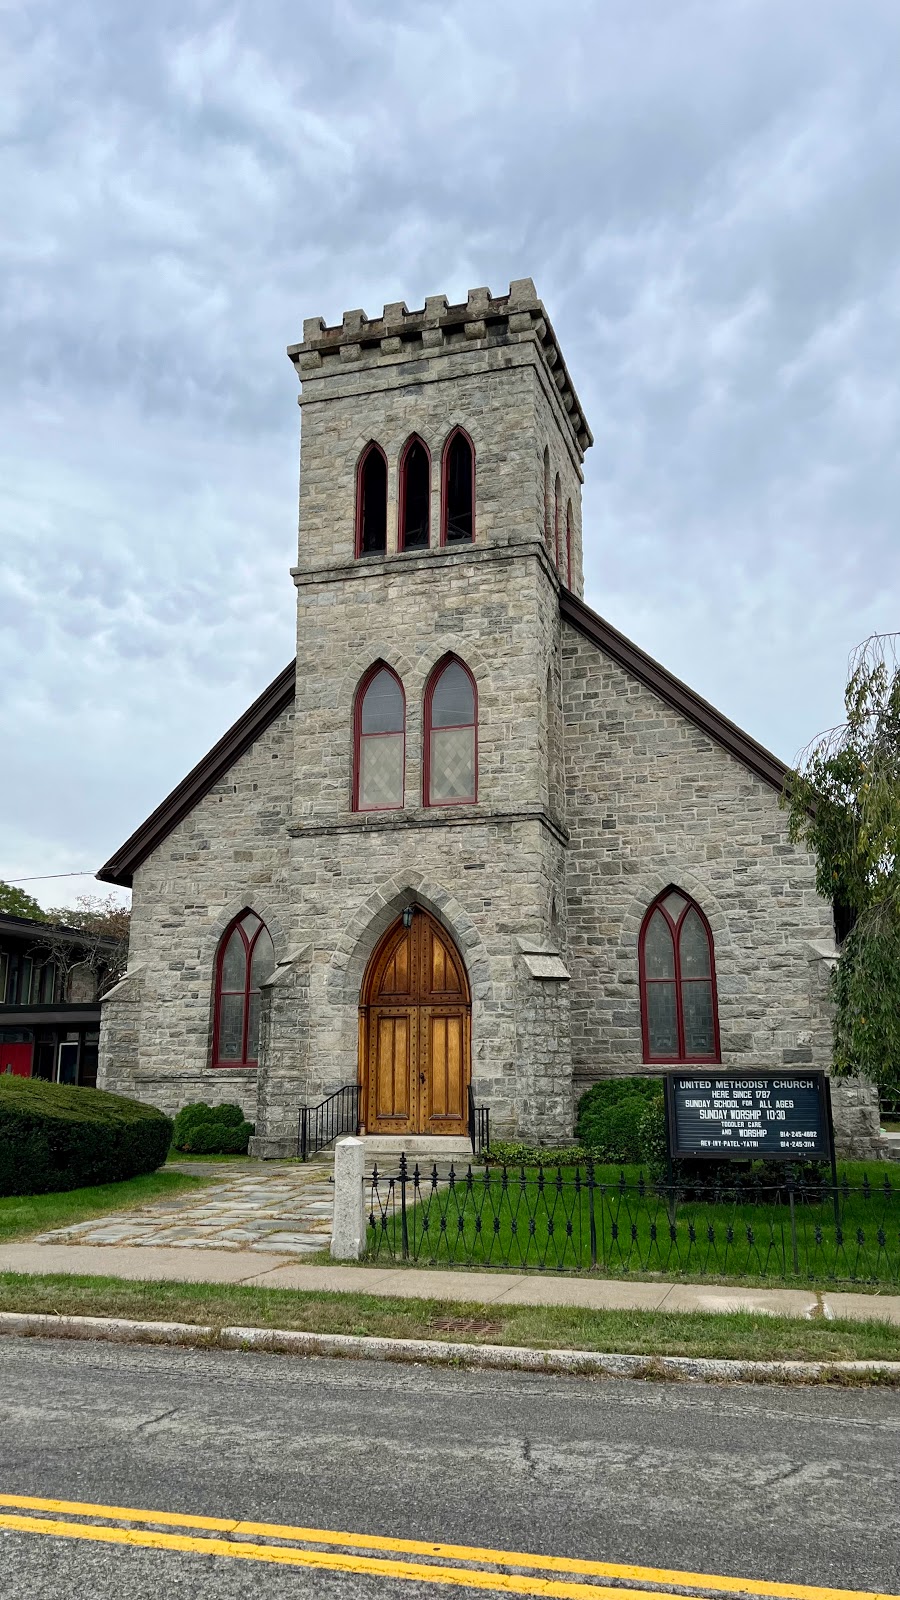 United Methodist Church at Shrub Oak | 1176 E Main St, Shrub Oak, NY 10588 | Phone: (914) 245-4682